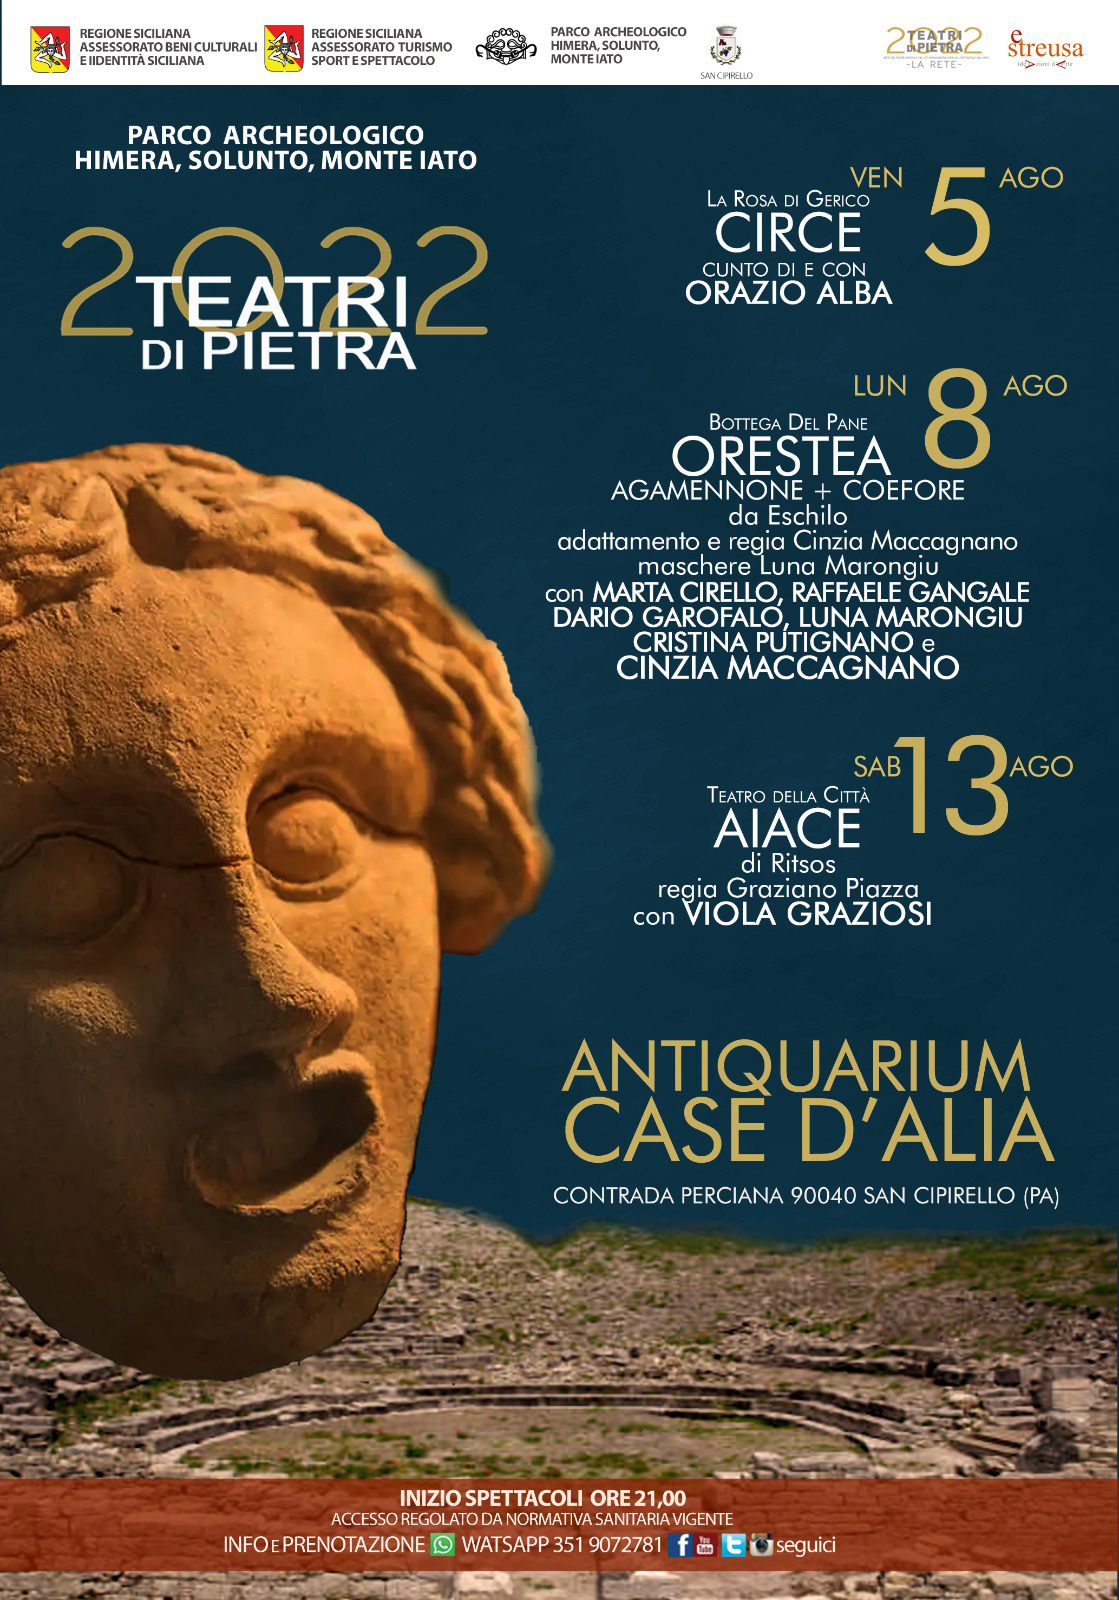 Palermo, I Teatri di Pietra nell’area archeologica di Monte Iato  portano in scena i classici riveduti: questa sera alle 21, Circe